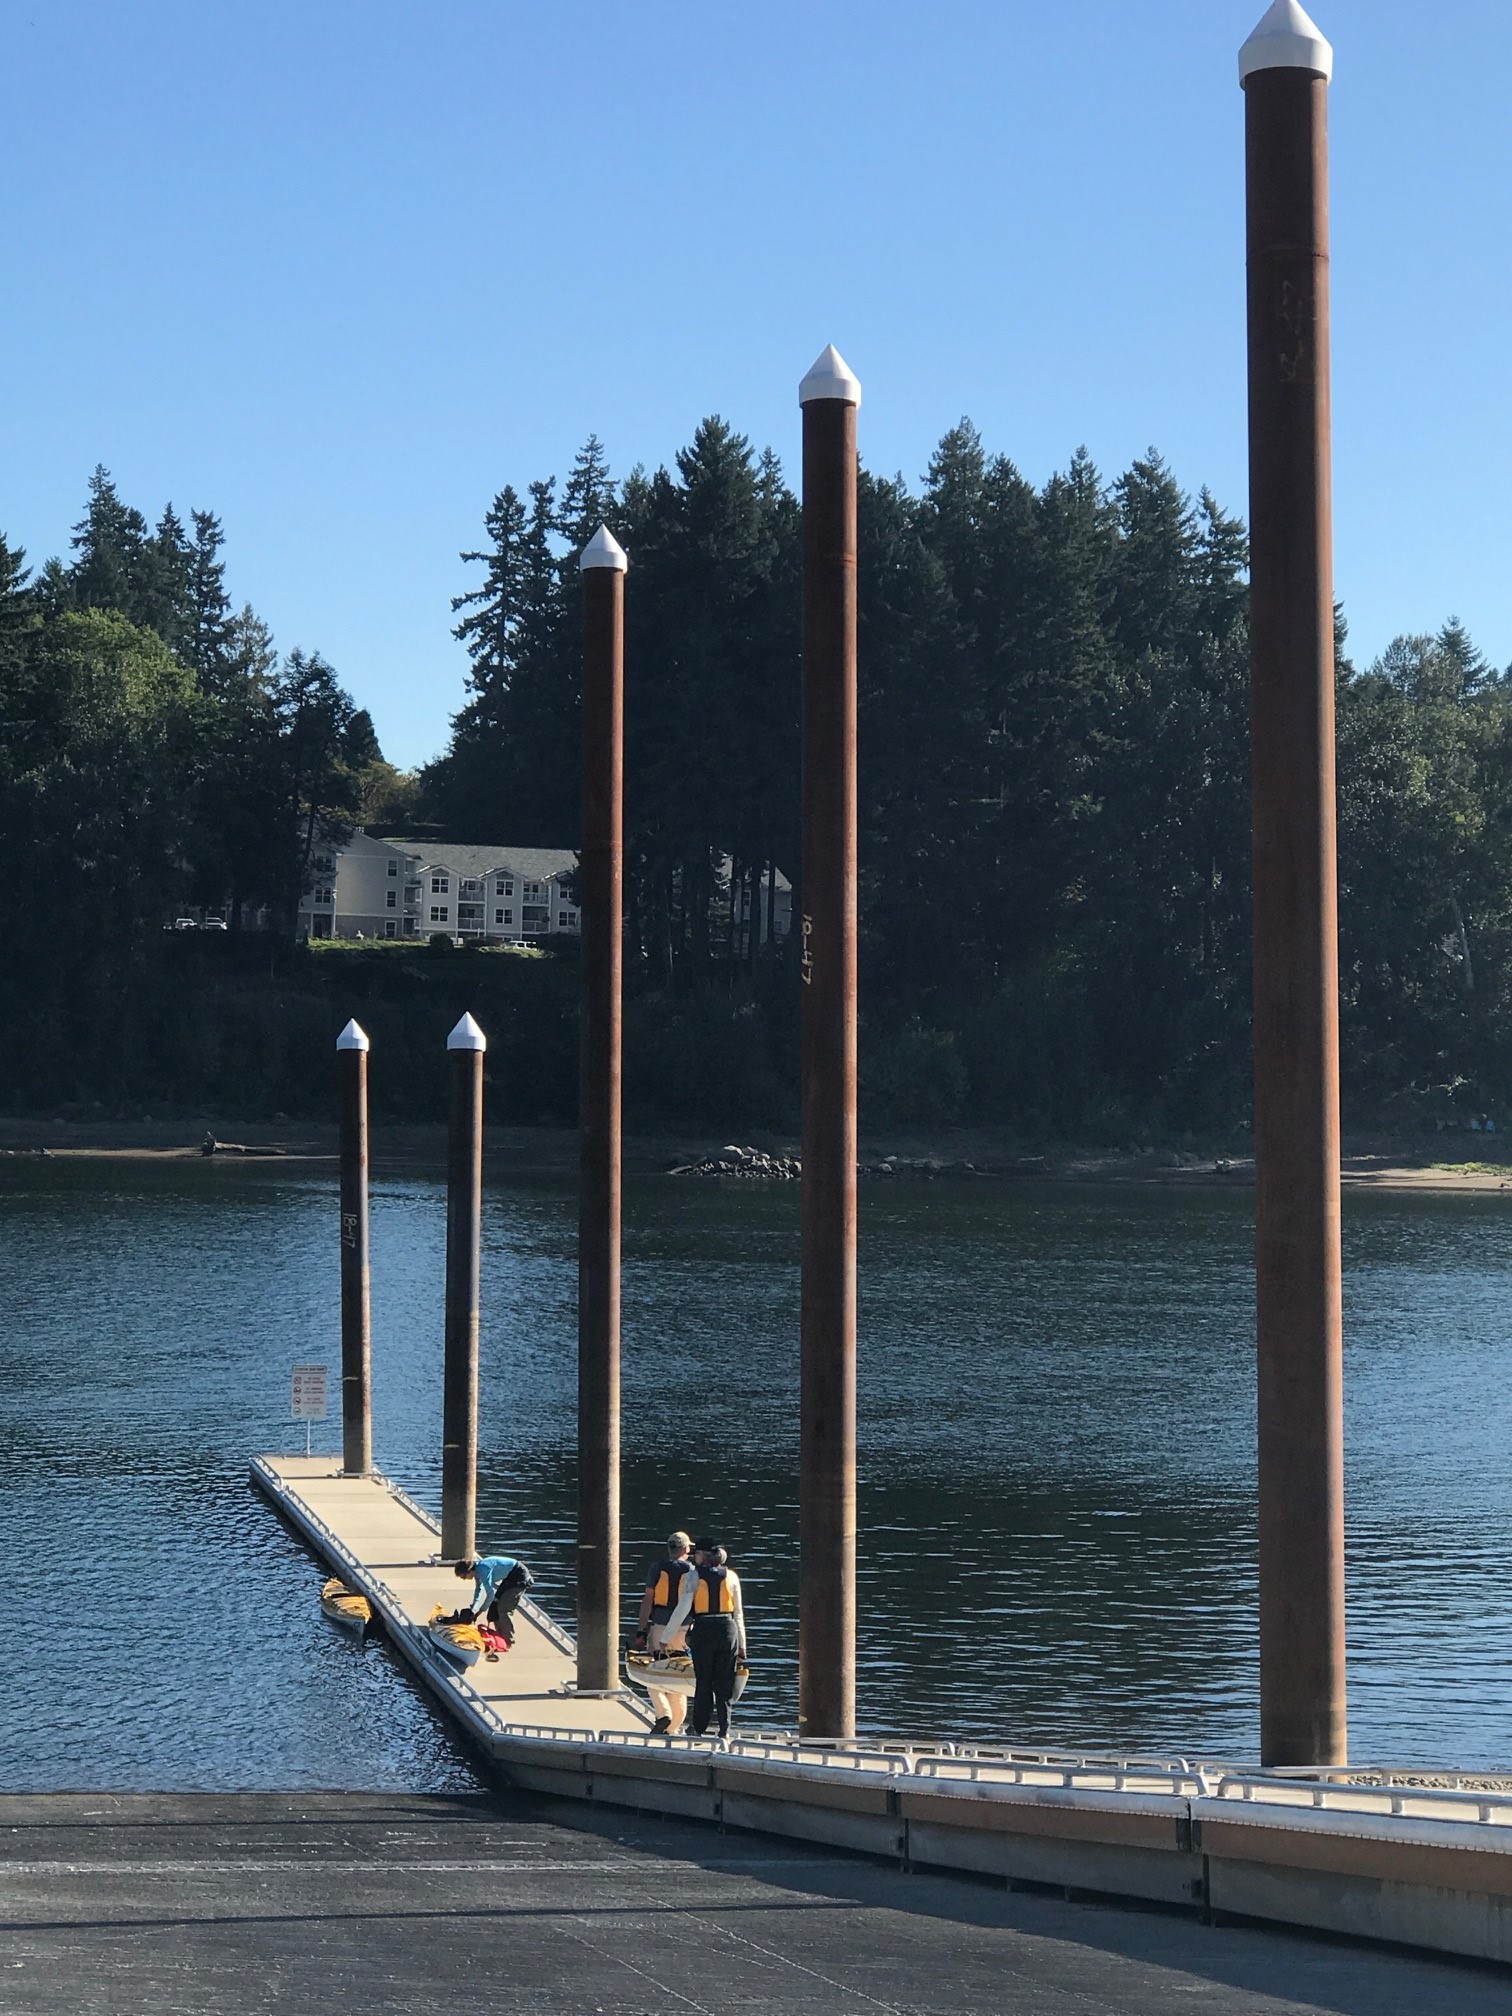 Cedaroak Boat Ramp | City of West Linn Oregon Official Website